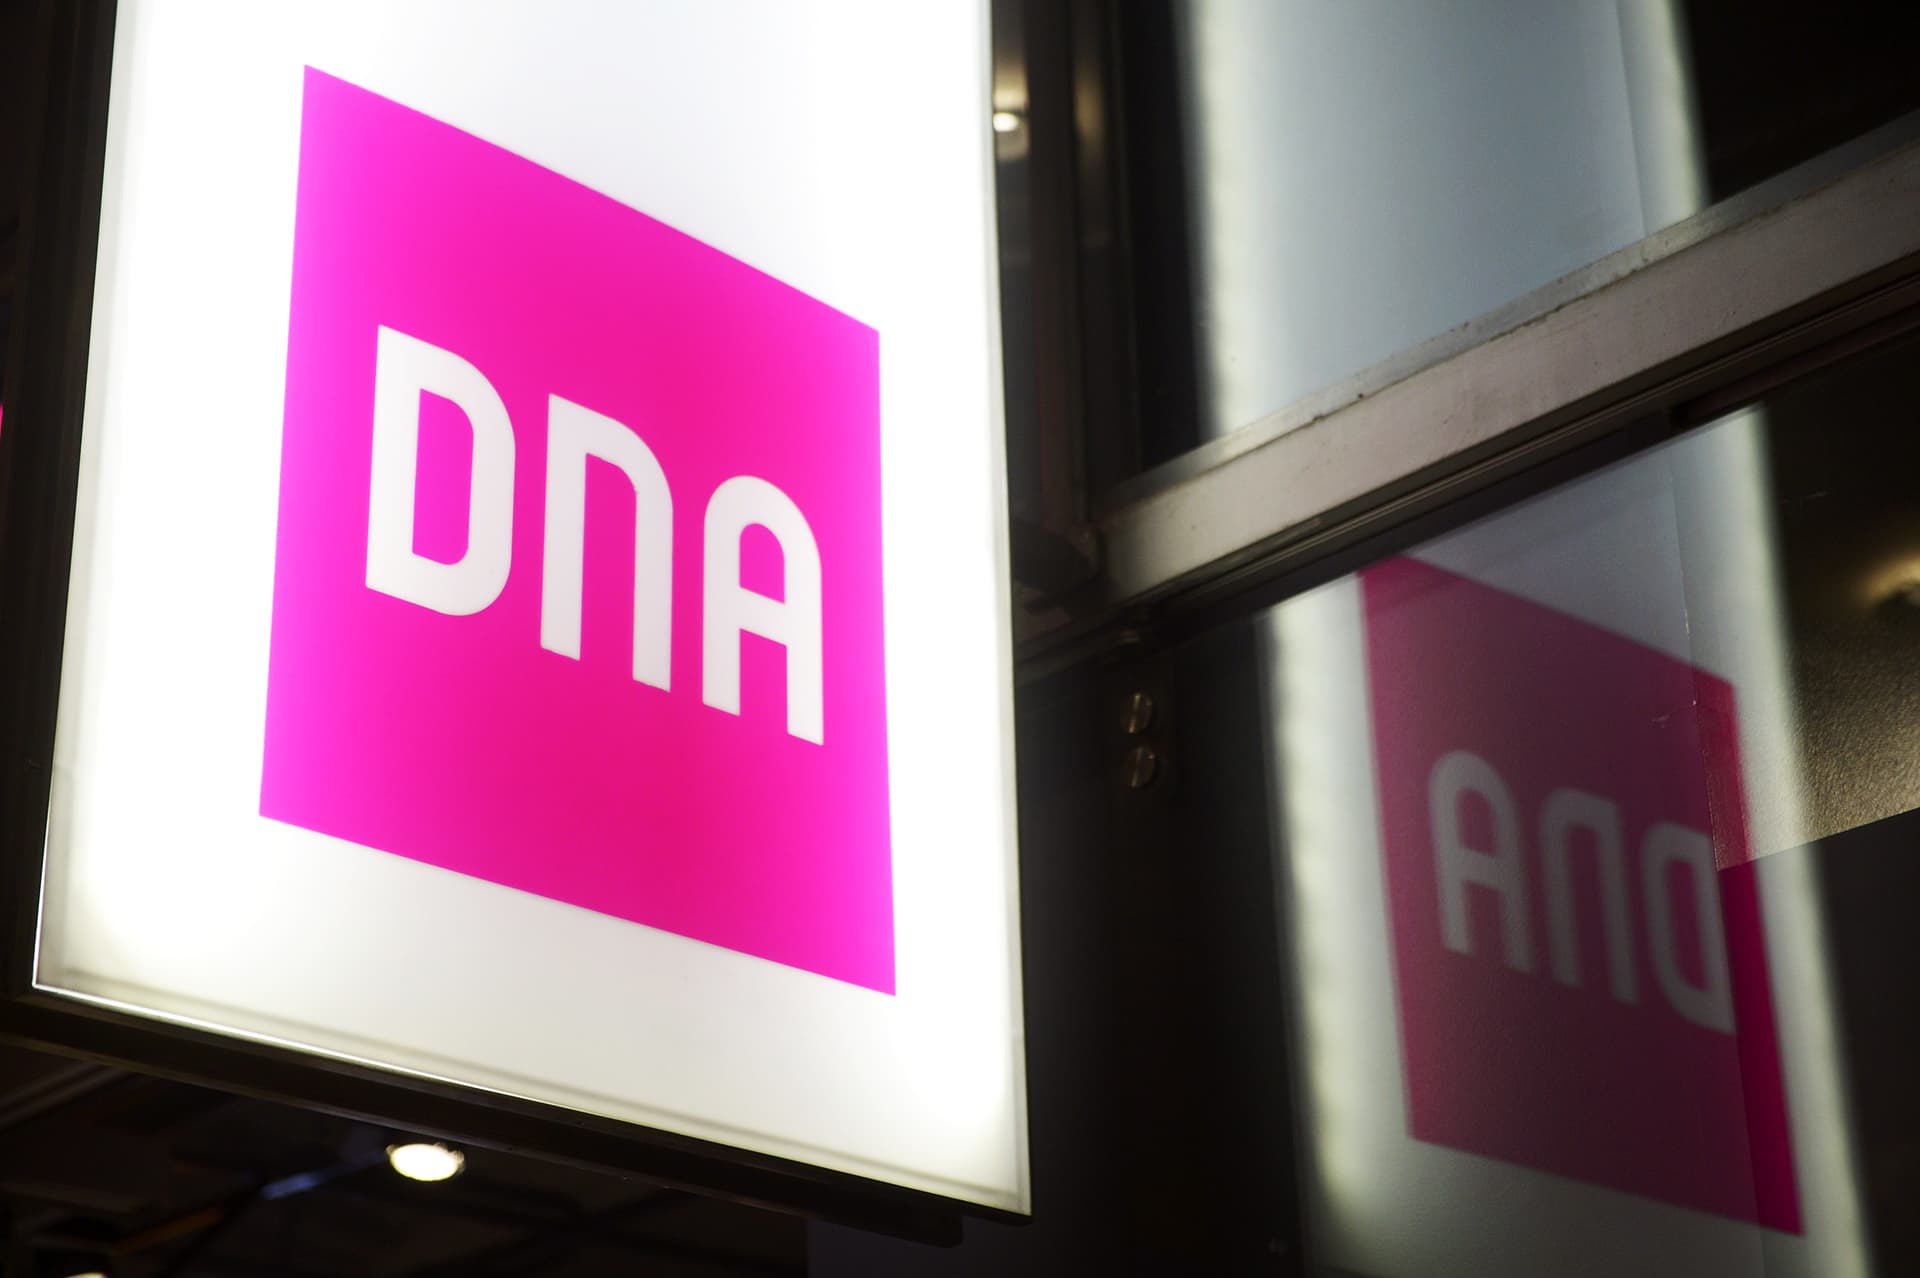  DNA:n logo Kampin kauppakeskuksessa Helsingissä 